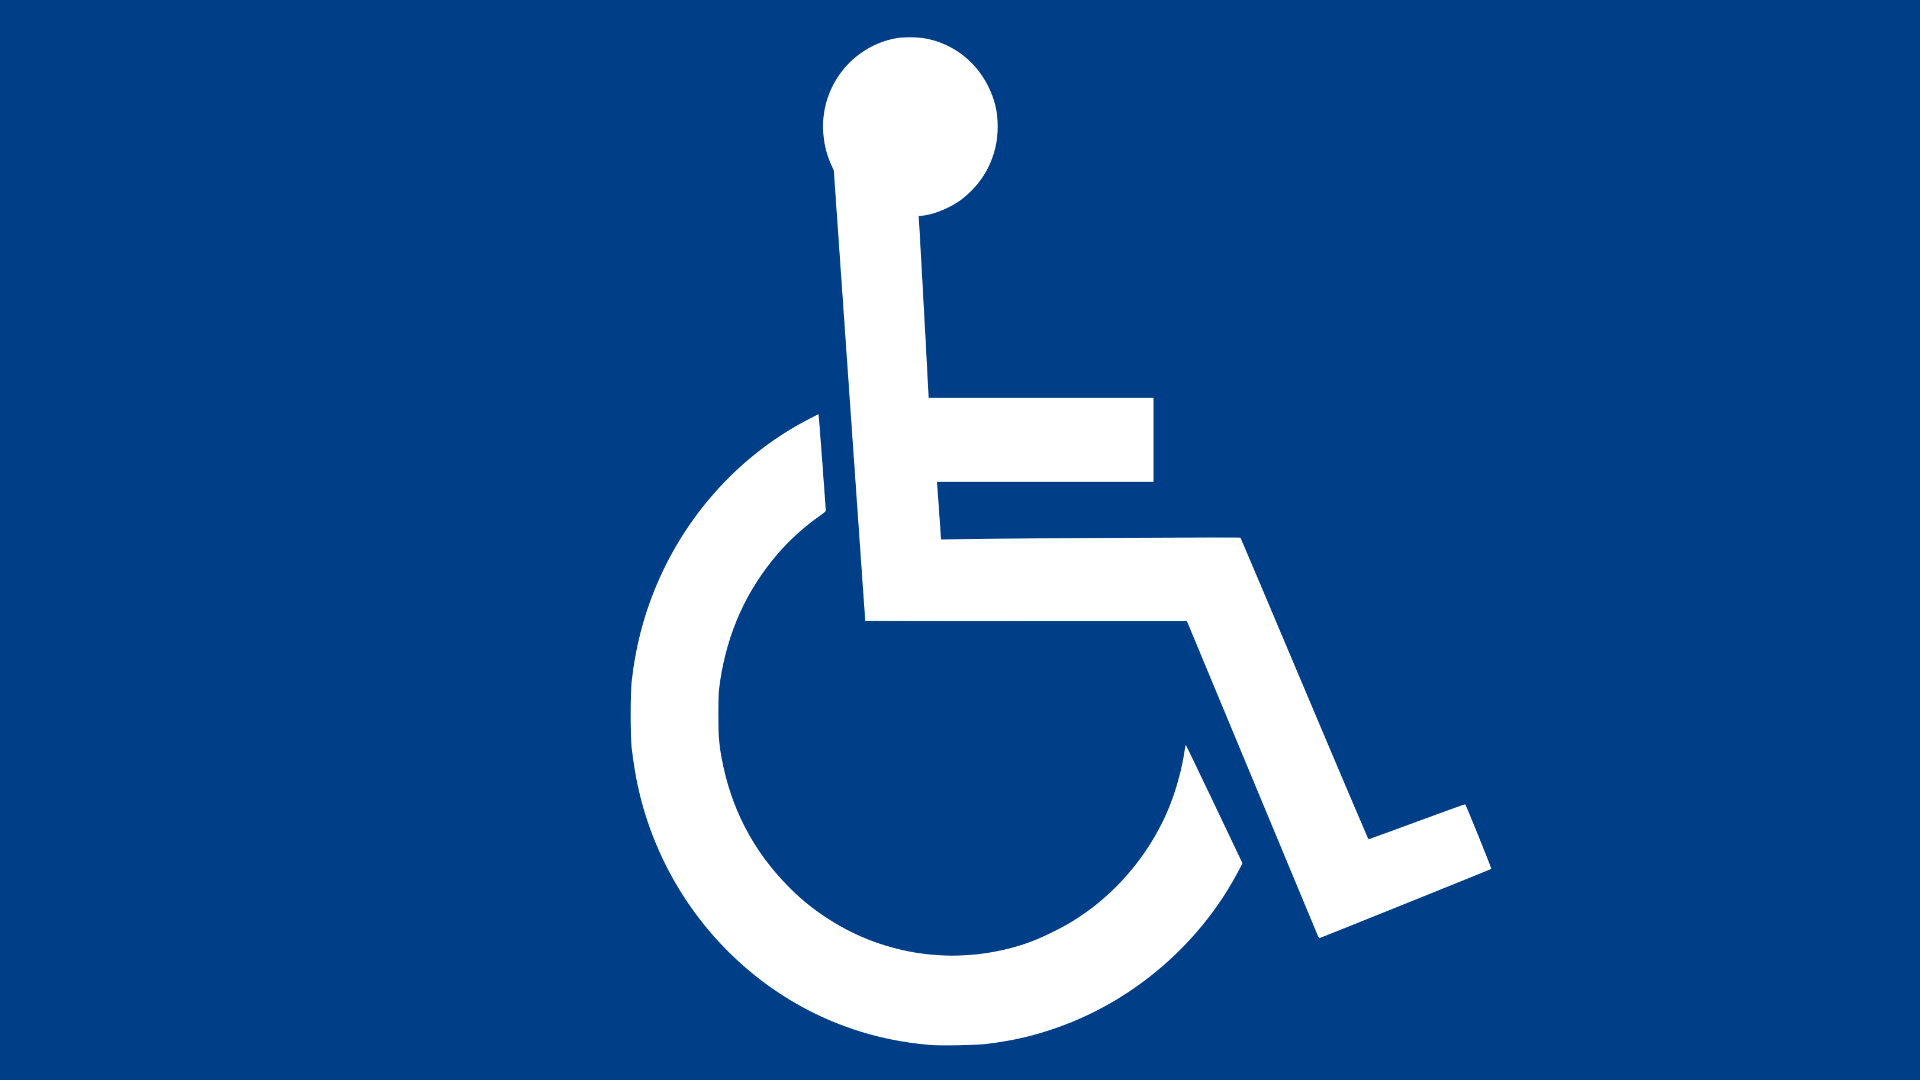 Biała sylwetka osoby na wózku inwalidzkim na ciemnoniebieskim tle, która jest symbolem niepełnosprawności